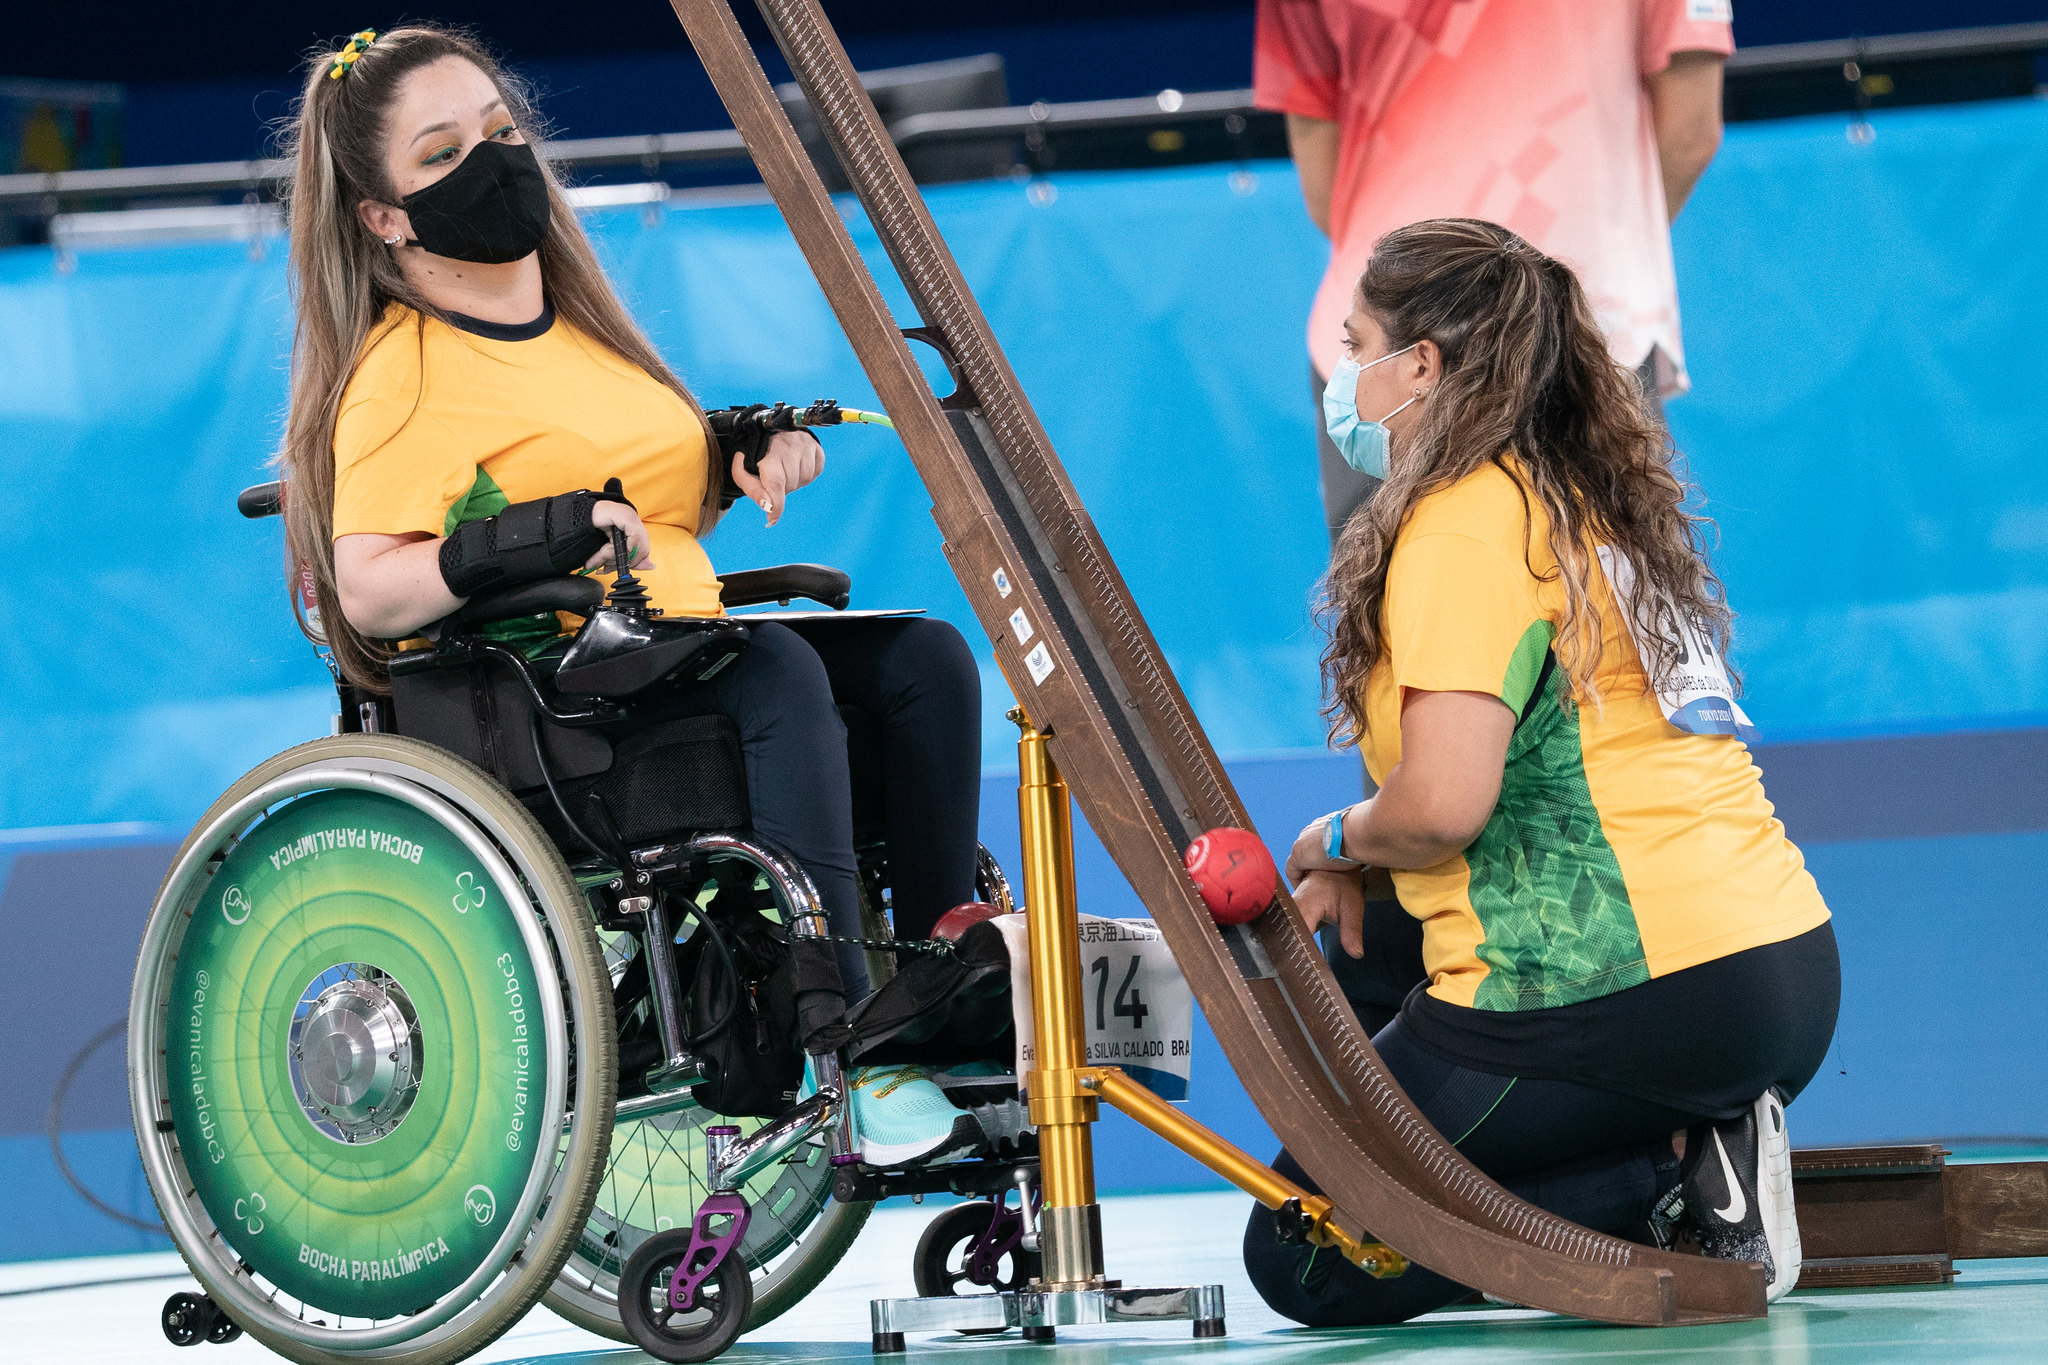 Foto que mostra Evani, na cadeira de rodas, com a camisa da seleção brasileira, de máscara e diante de uma calha, instrumento usado para arremar a bola da bocha. Ela está na frente de sua guia, que está ajoealhada.